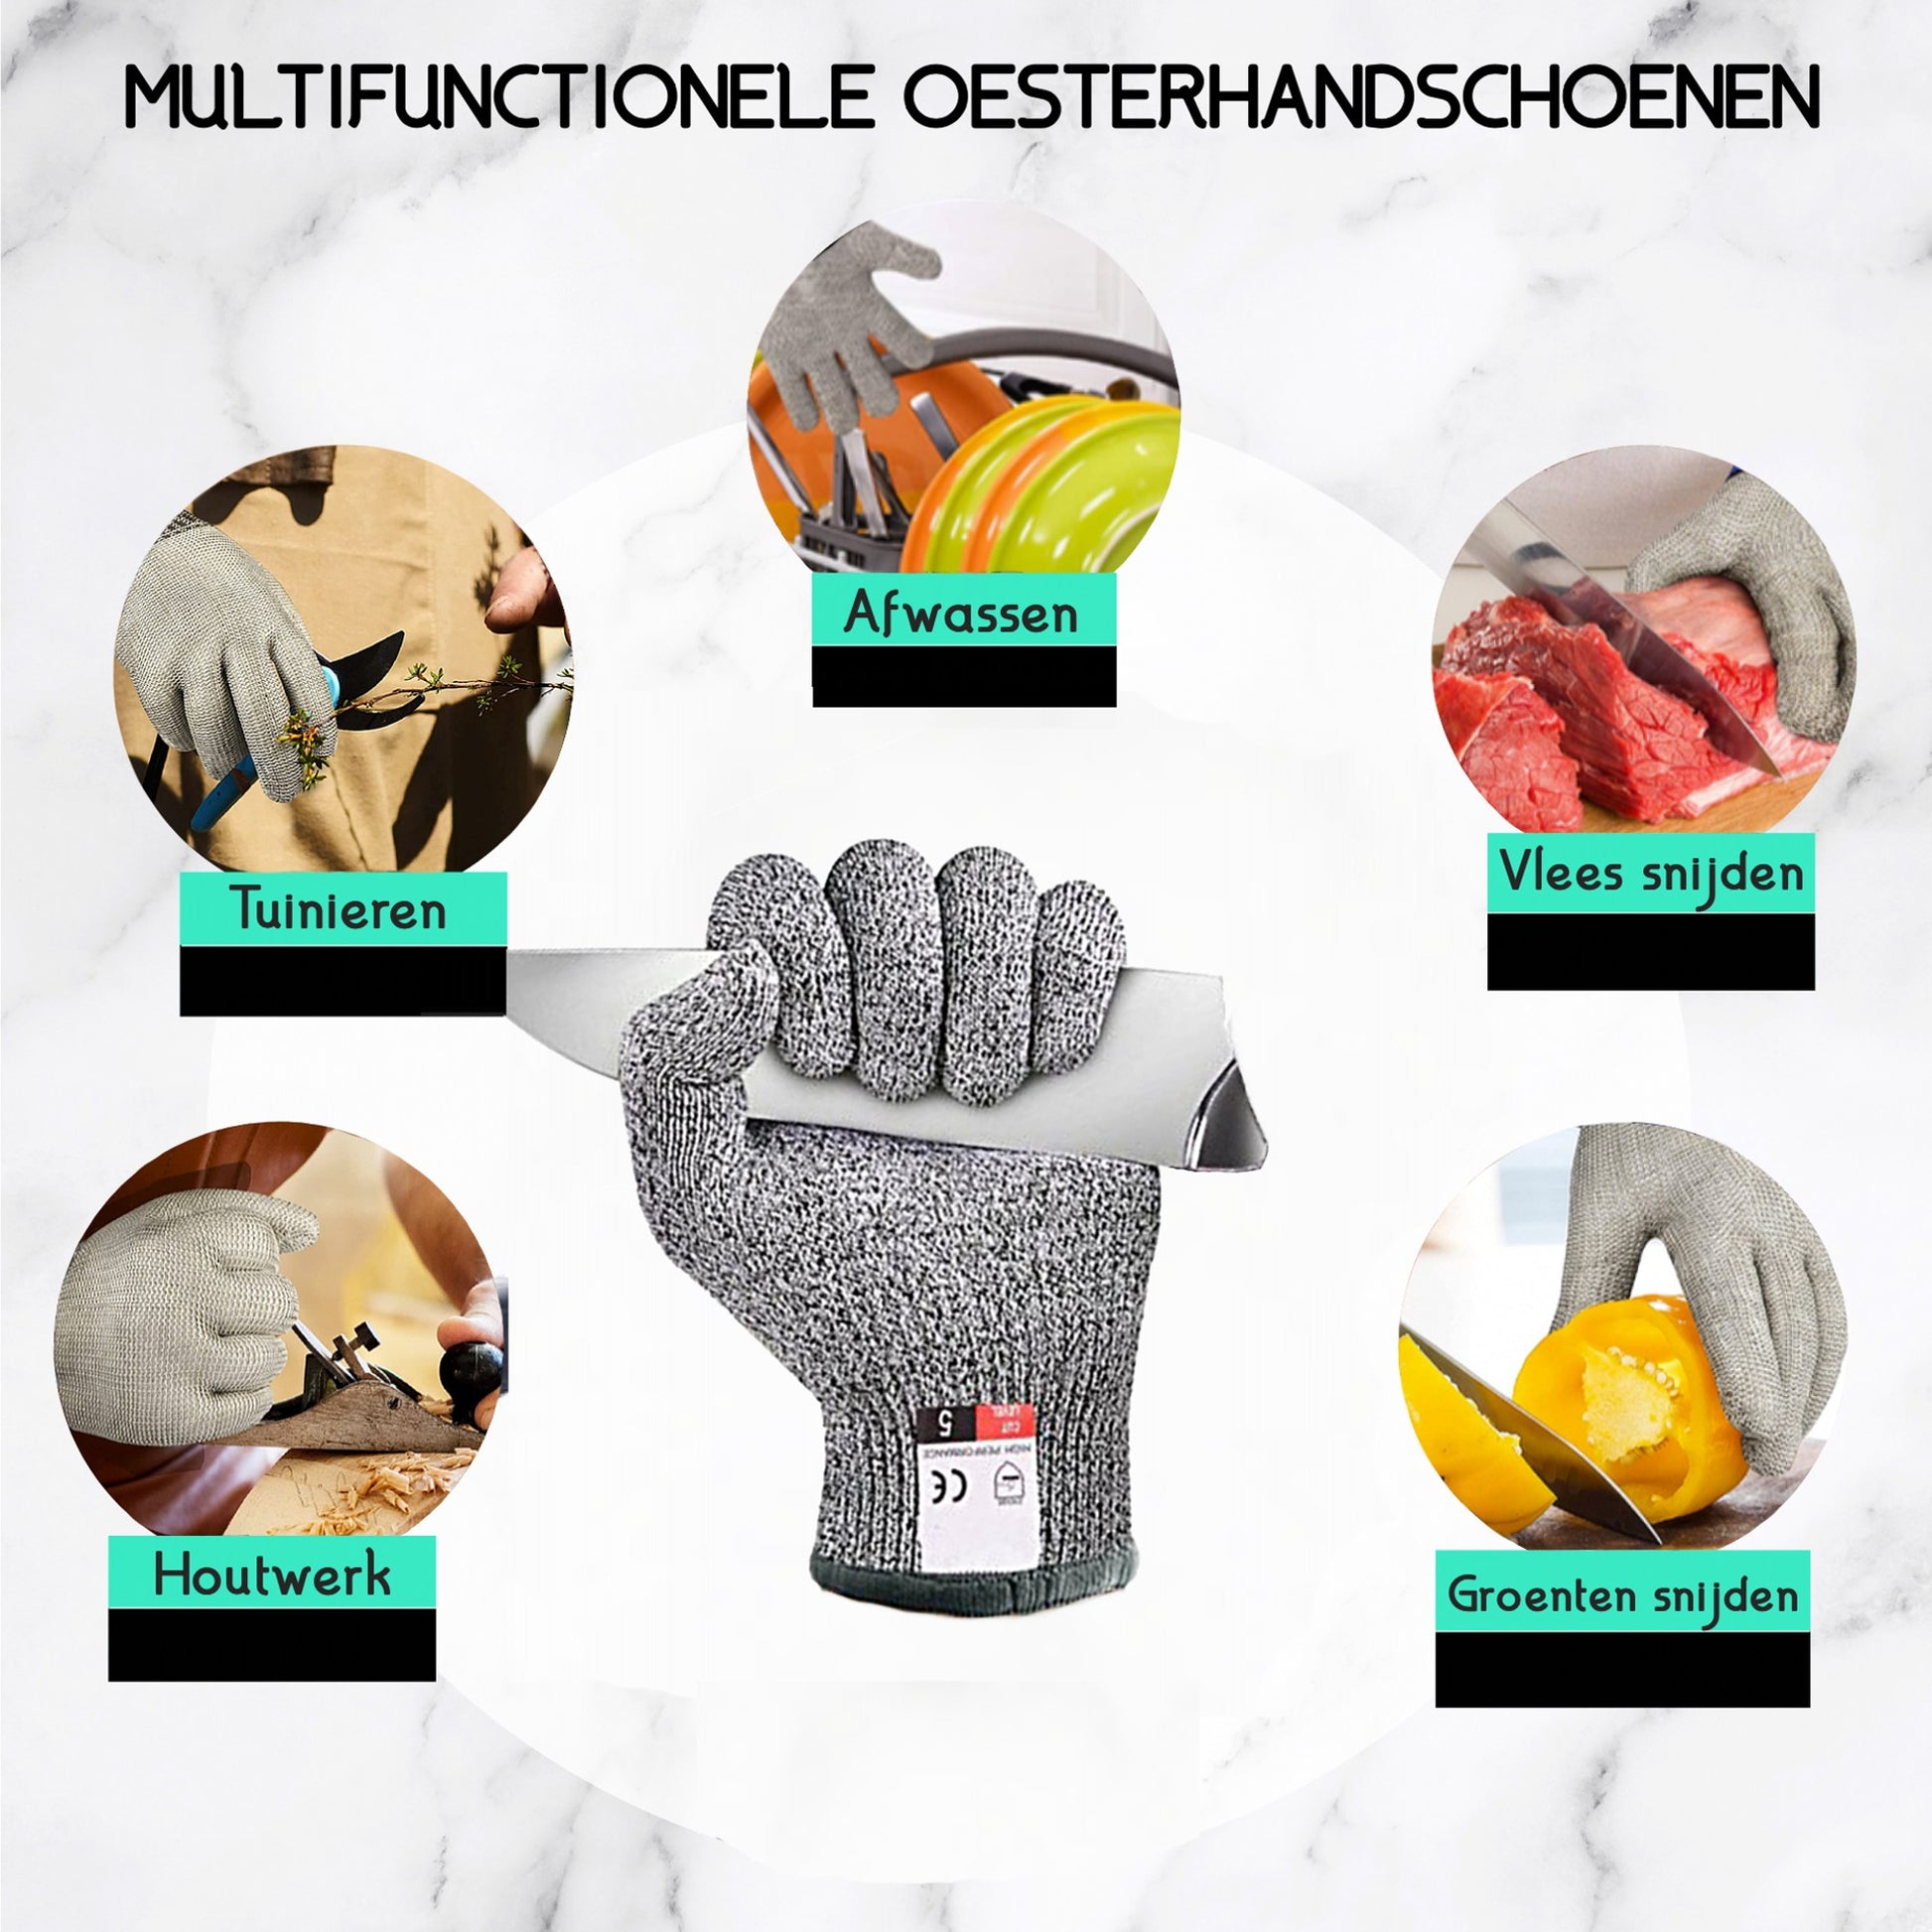 Beschermende handschoen gebruikt bij het hanteren van een oesterme